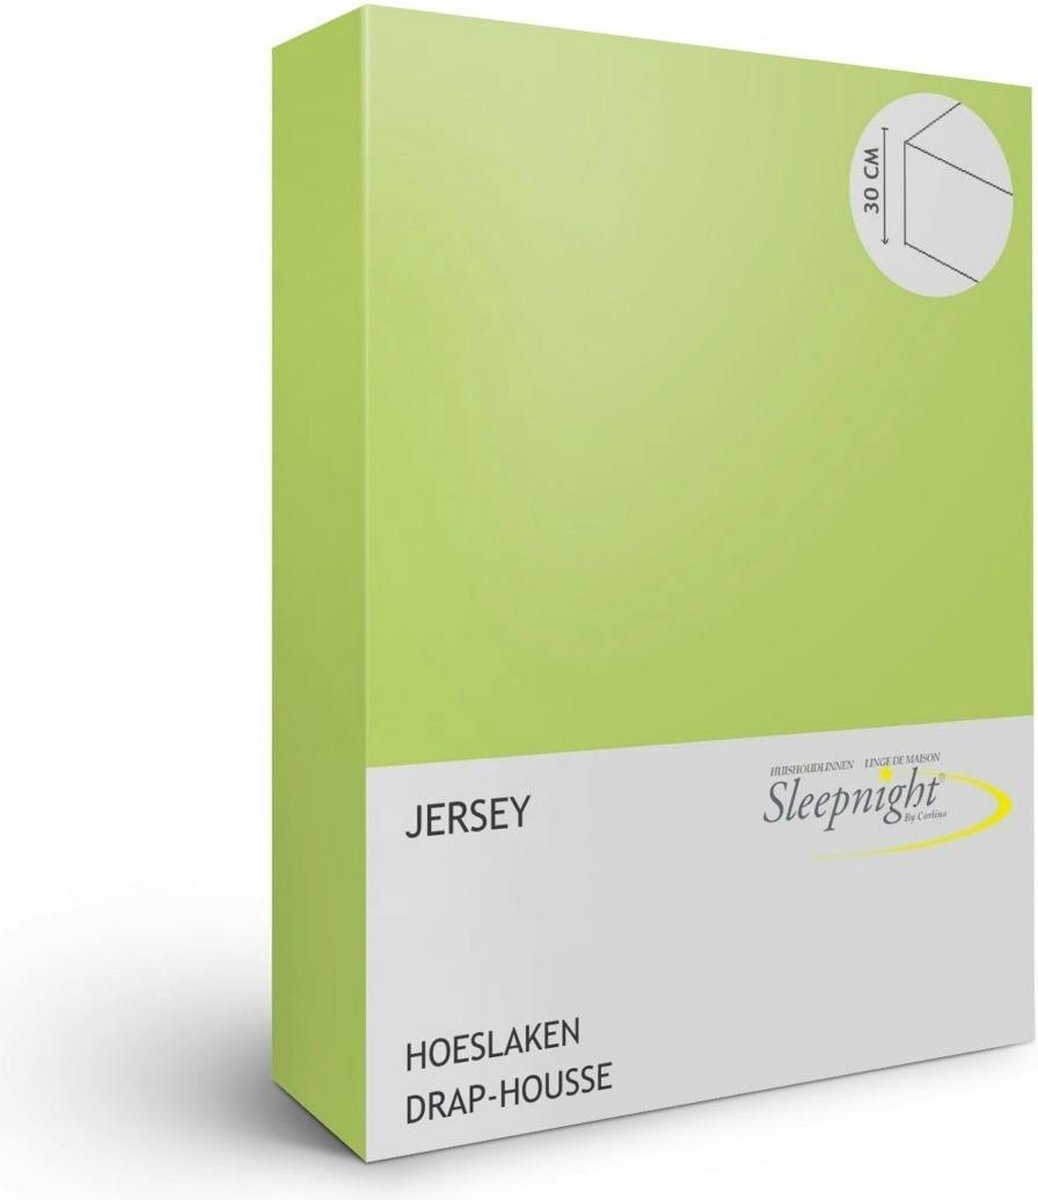 Sleepnight Hoeslaken - Groen limeJersey - LP550640 - B 100 x L 200 cm - Eenpersoons Strijkvrij